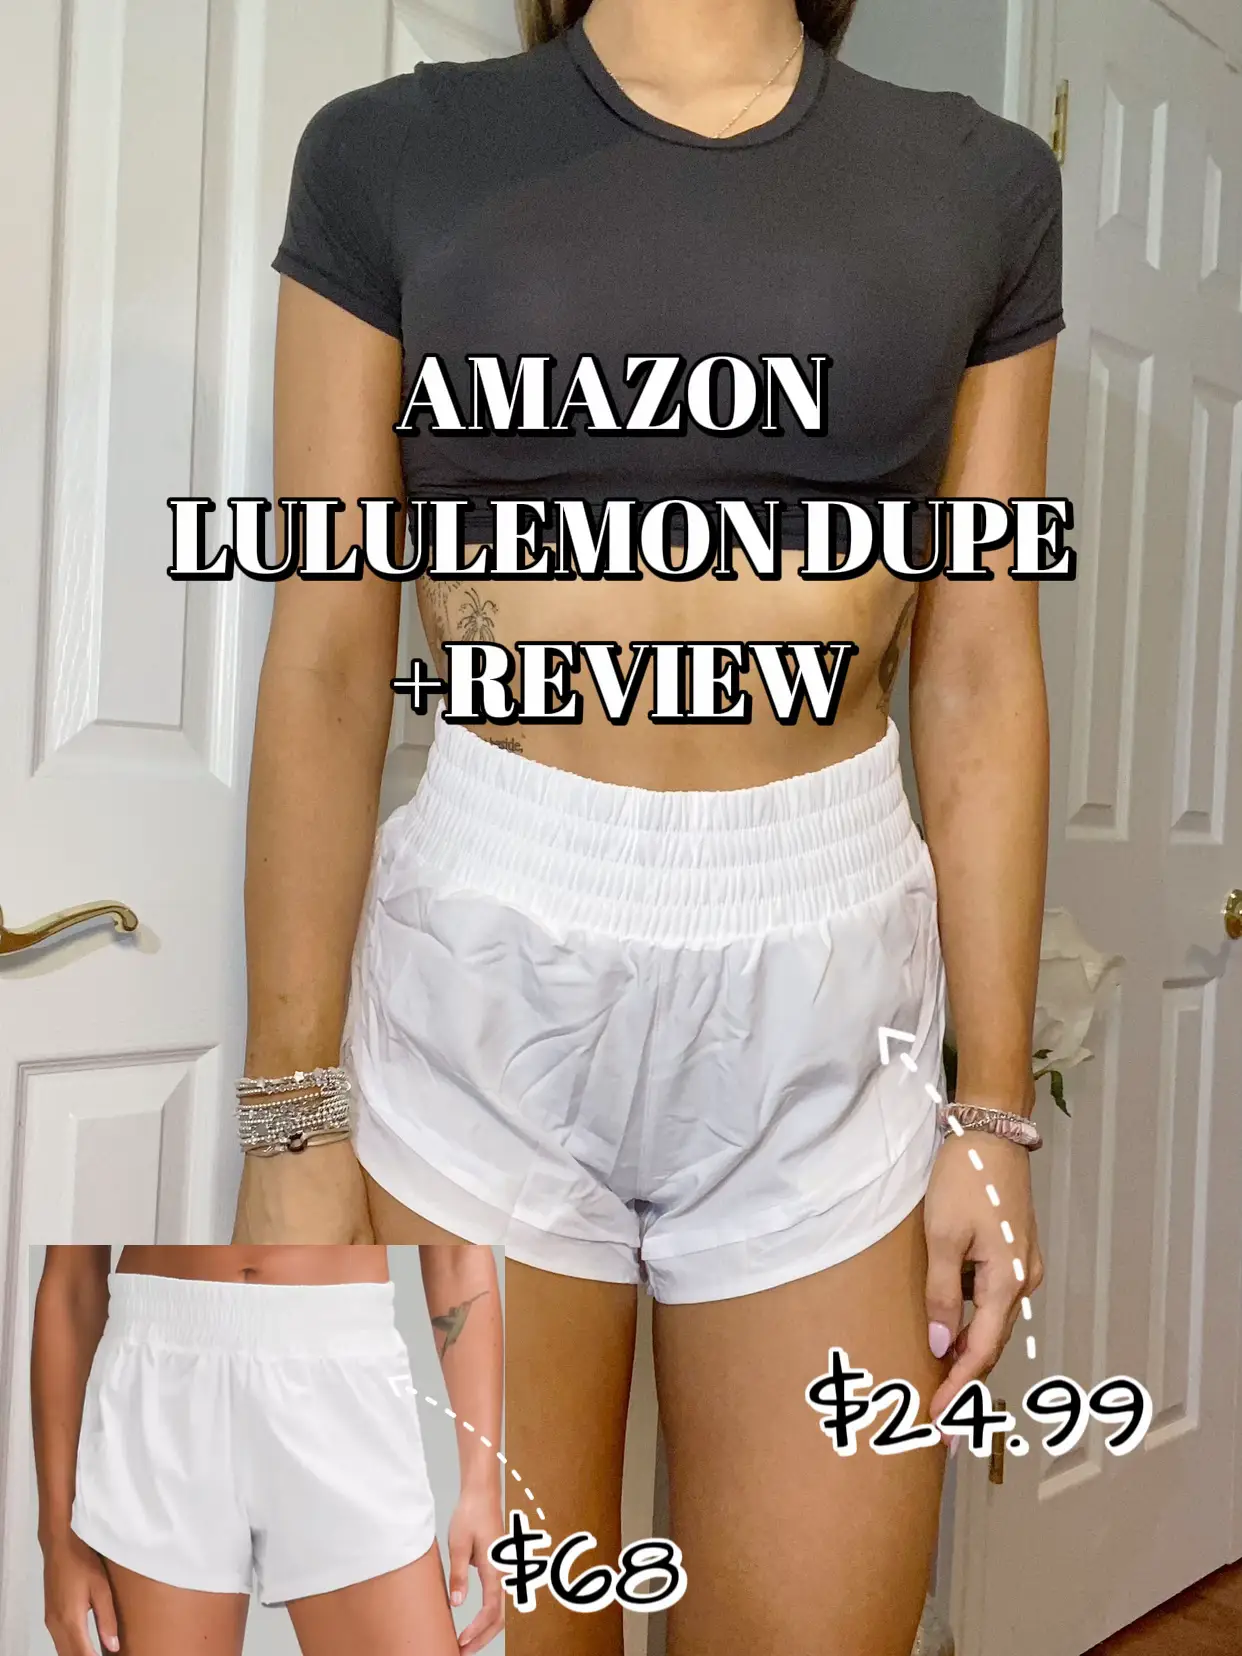 white lululemon hotty hot shorts! - size 2 - 4in - - Depop